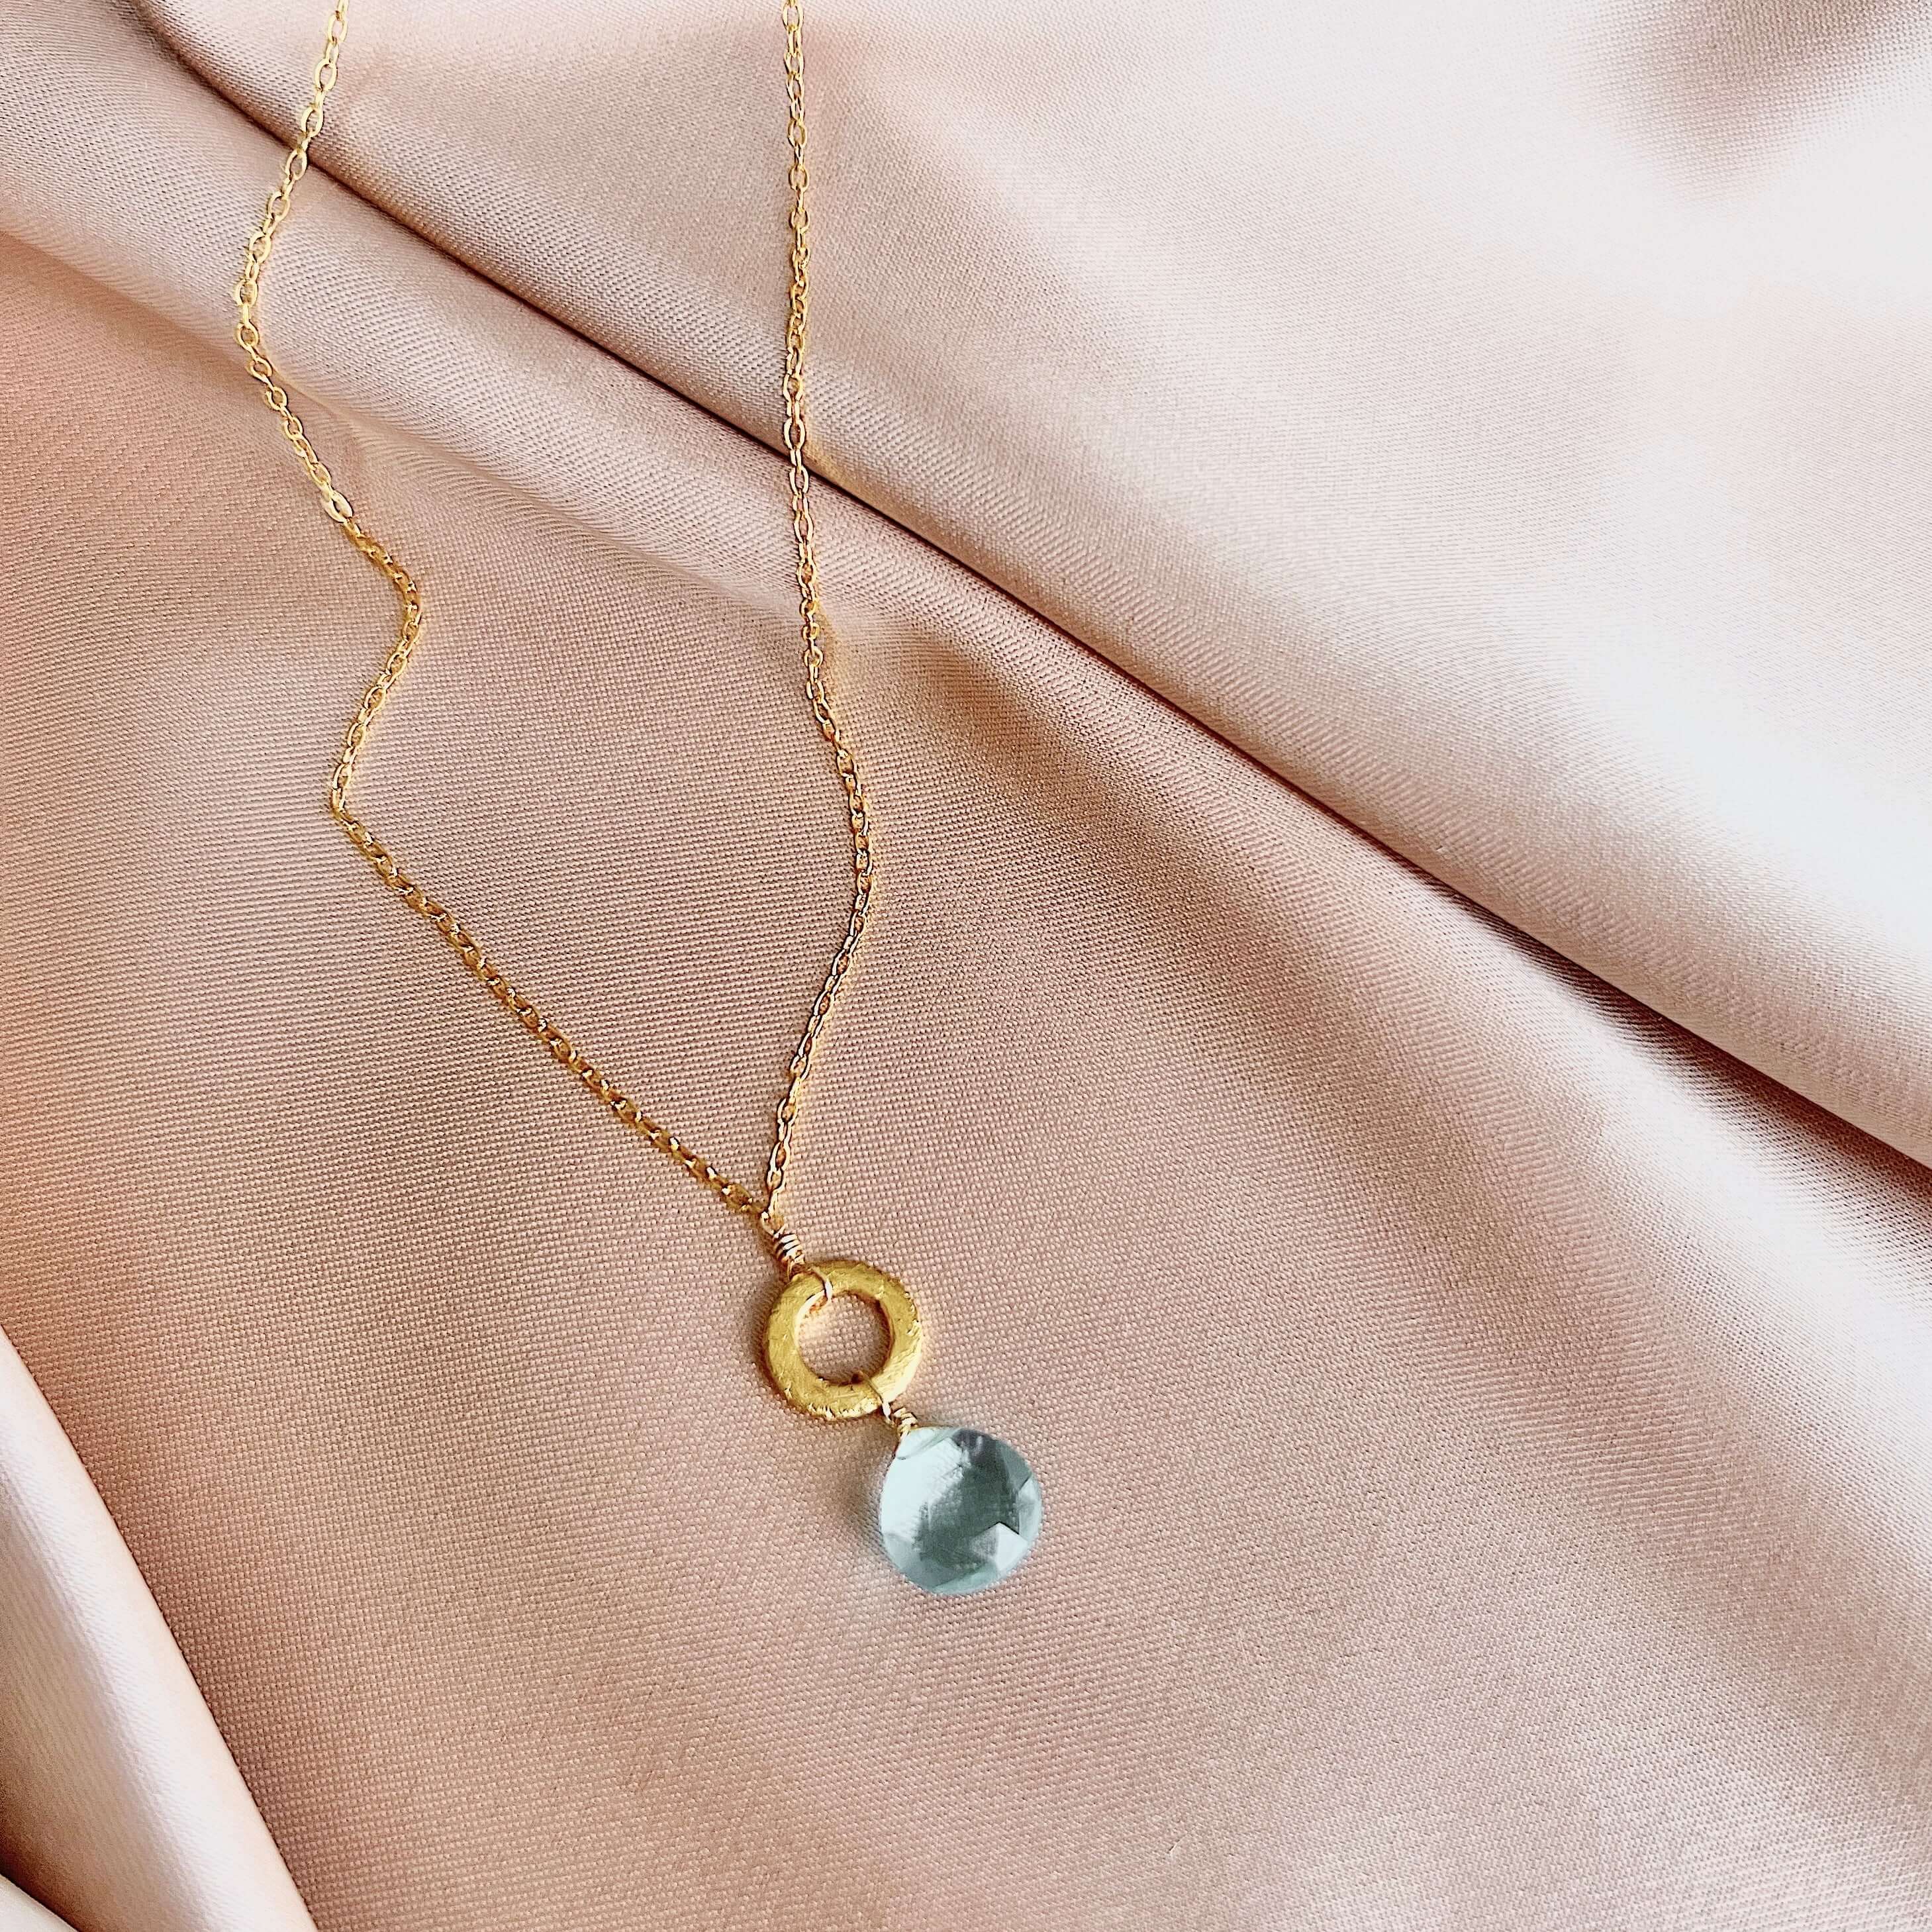 Aquamarine Gemstone Pendant Necklace - 14k Gold Plated Elegance